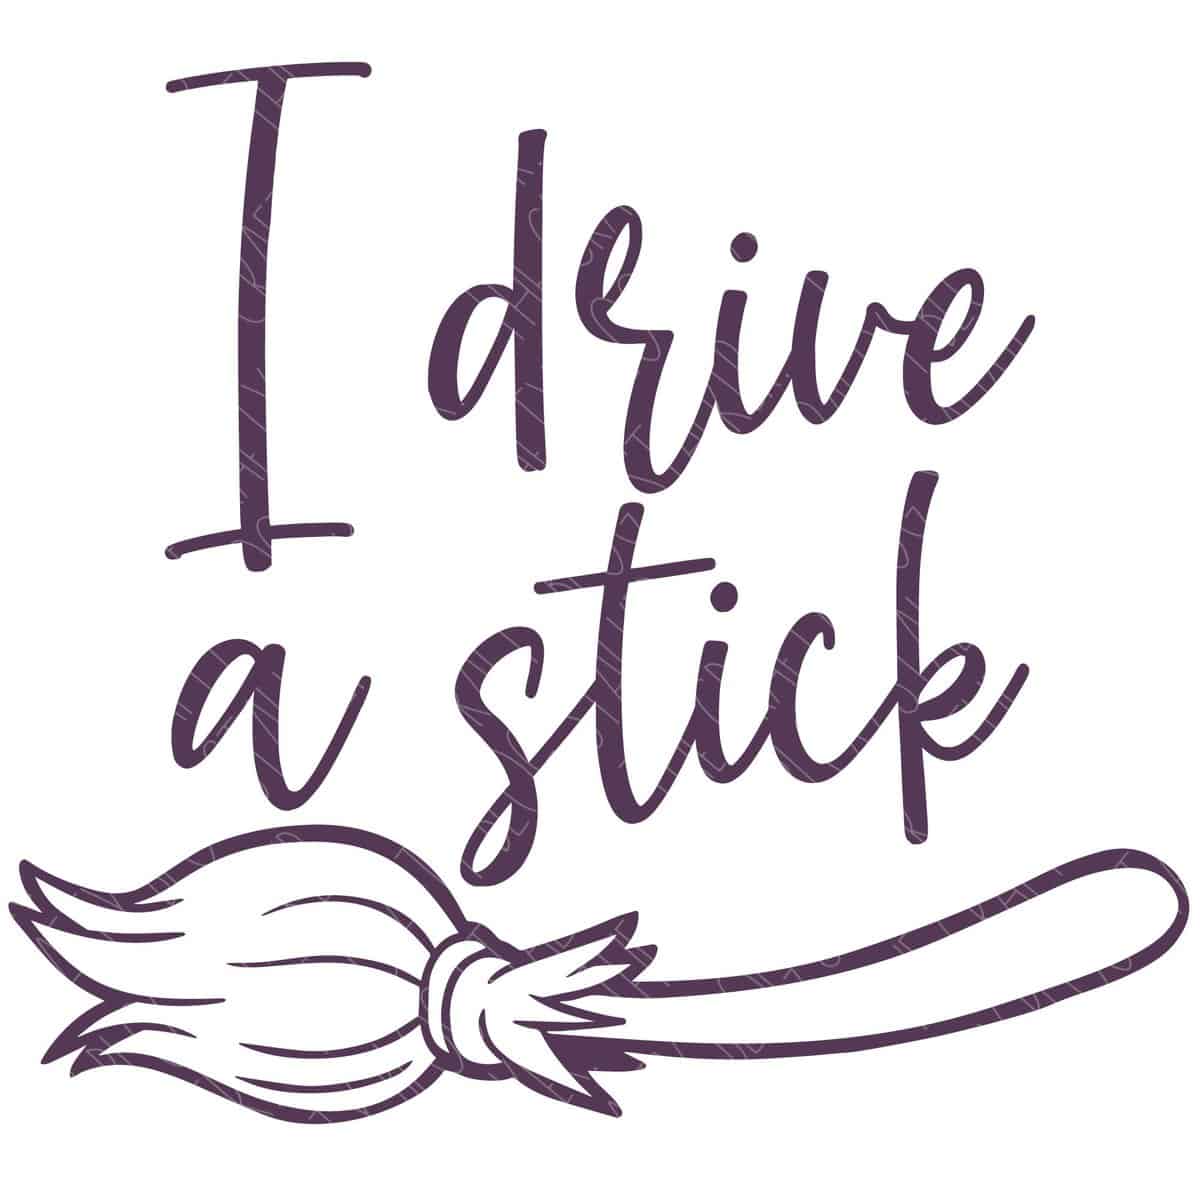 SVG Cut File: I drive a stick (broomstick).